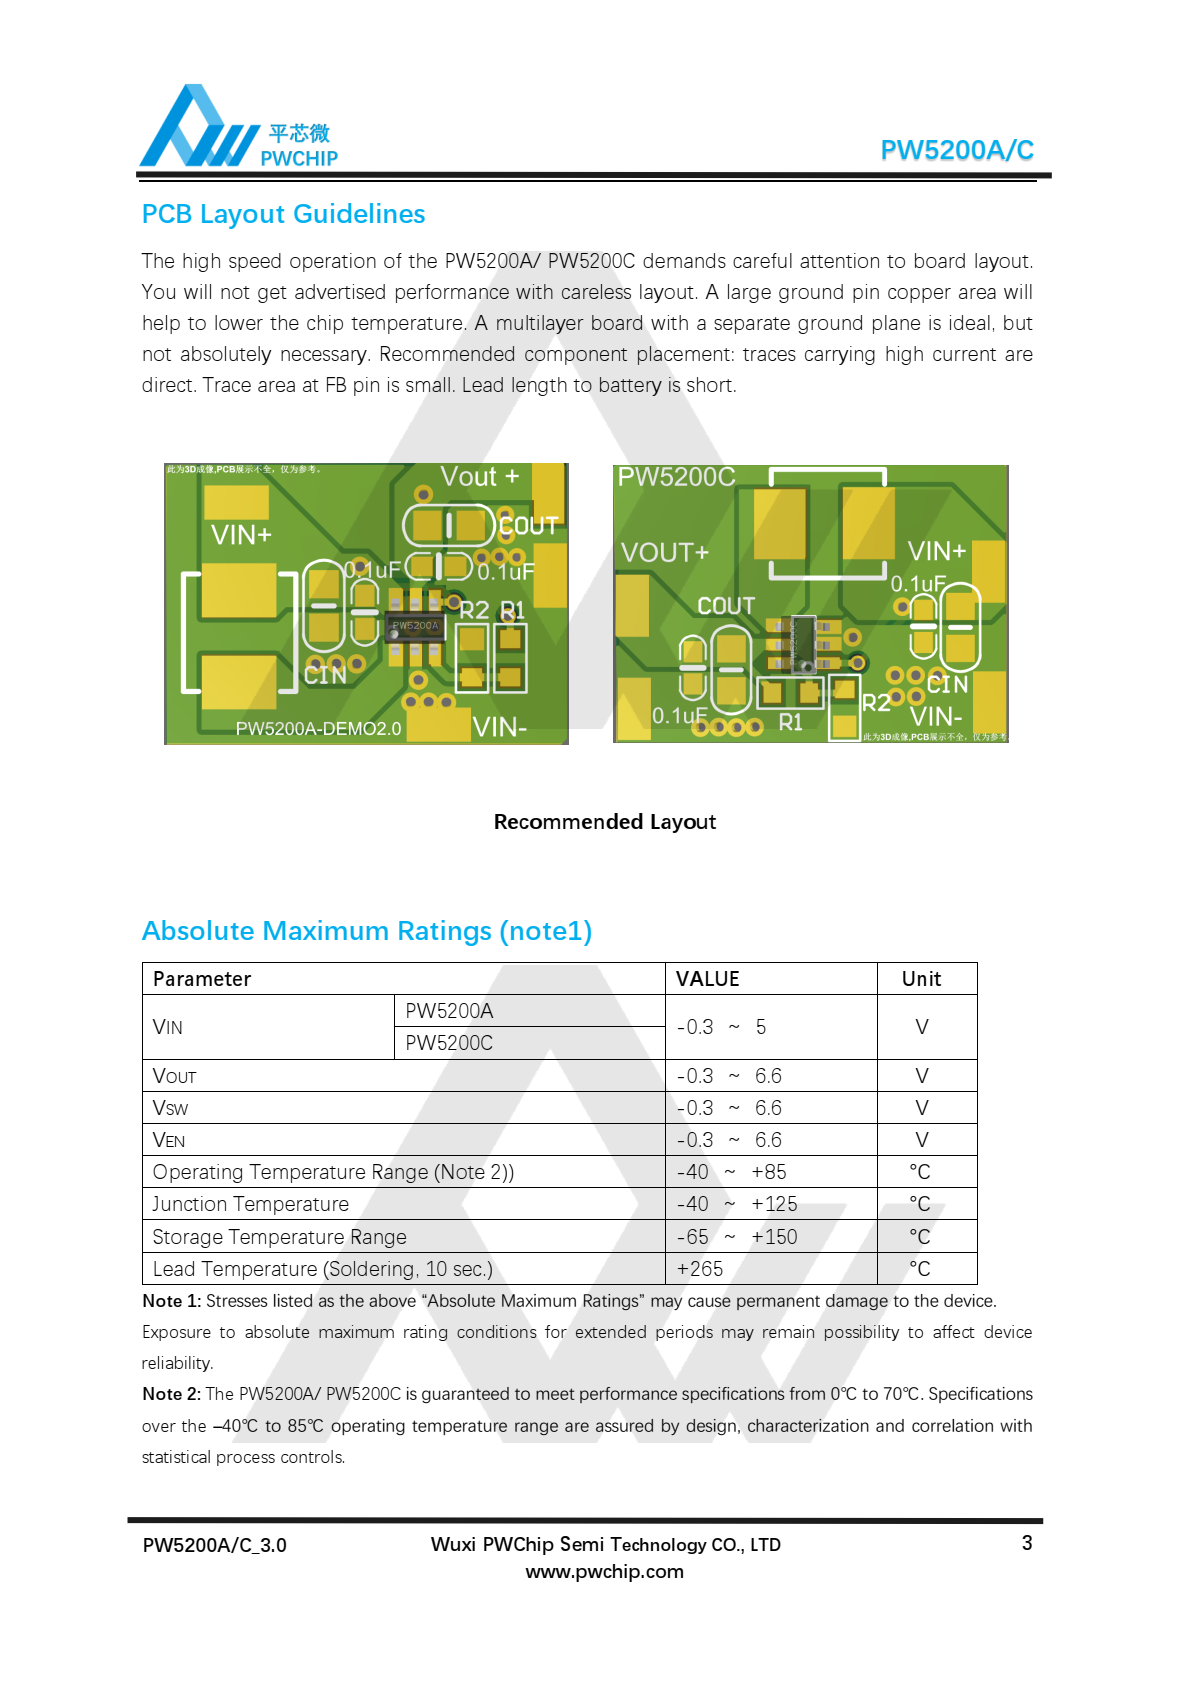 代理PW5200A/PW5200C是经过优化的高效同步PWM升压DC/DC转换器